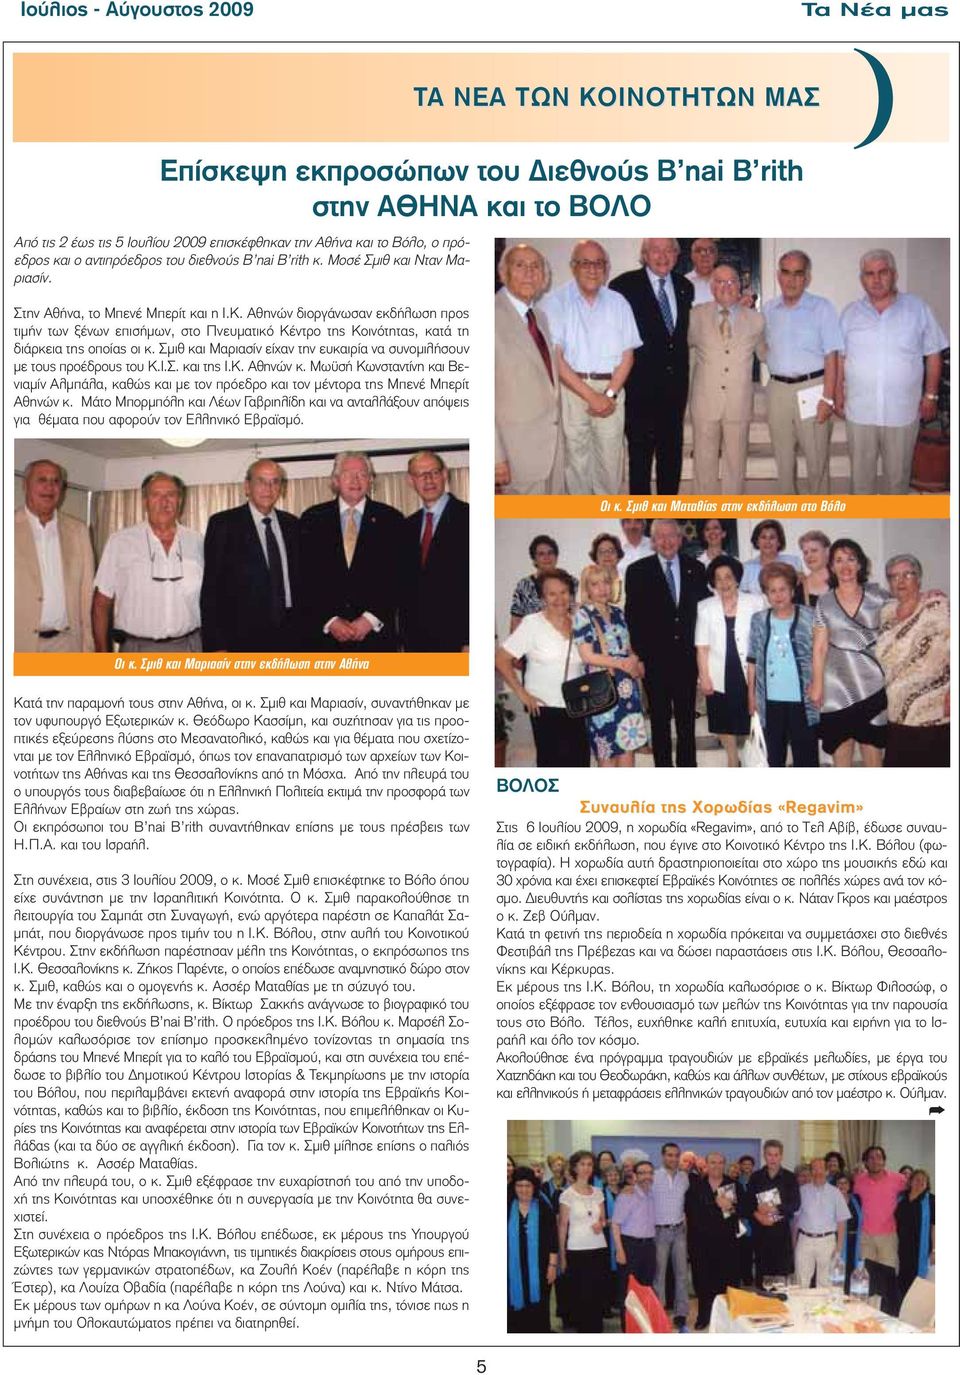 Αθηνών διοργάνωσαν εκδήλωση προς τιμήν των ξένων επισήμων, στο Πνευματικό Κέντρο της Κοινότητας, κατά τη διάρκεια της οποίας οι κ.